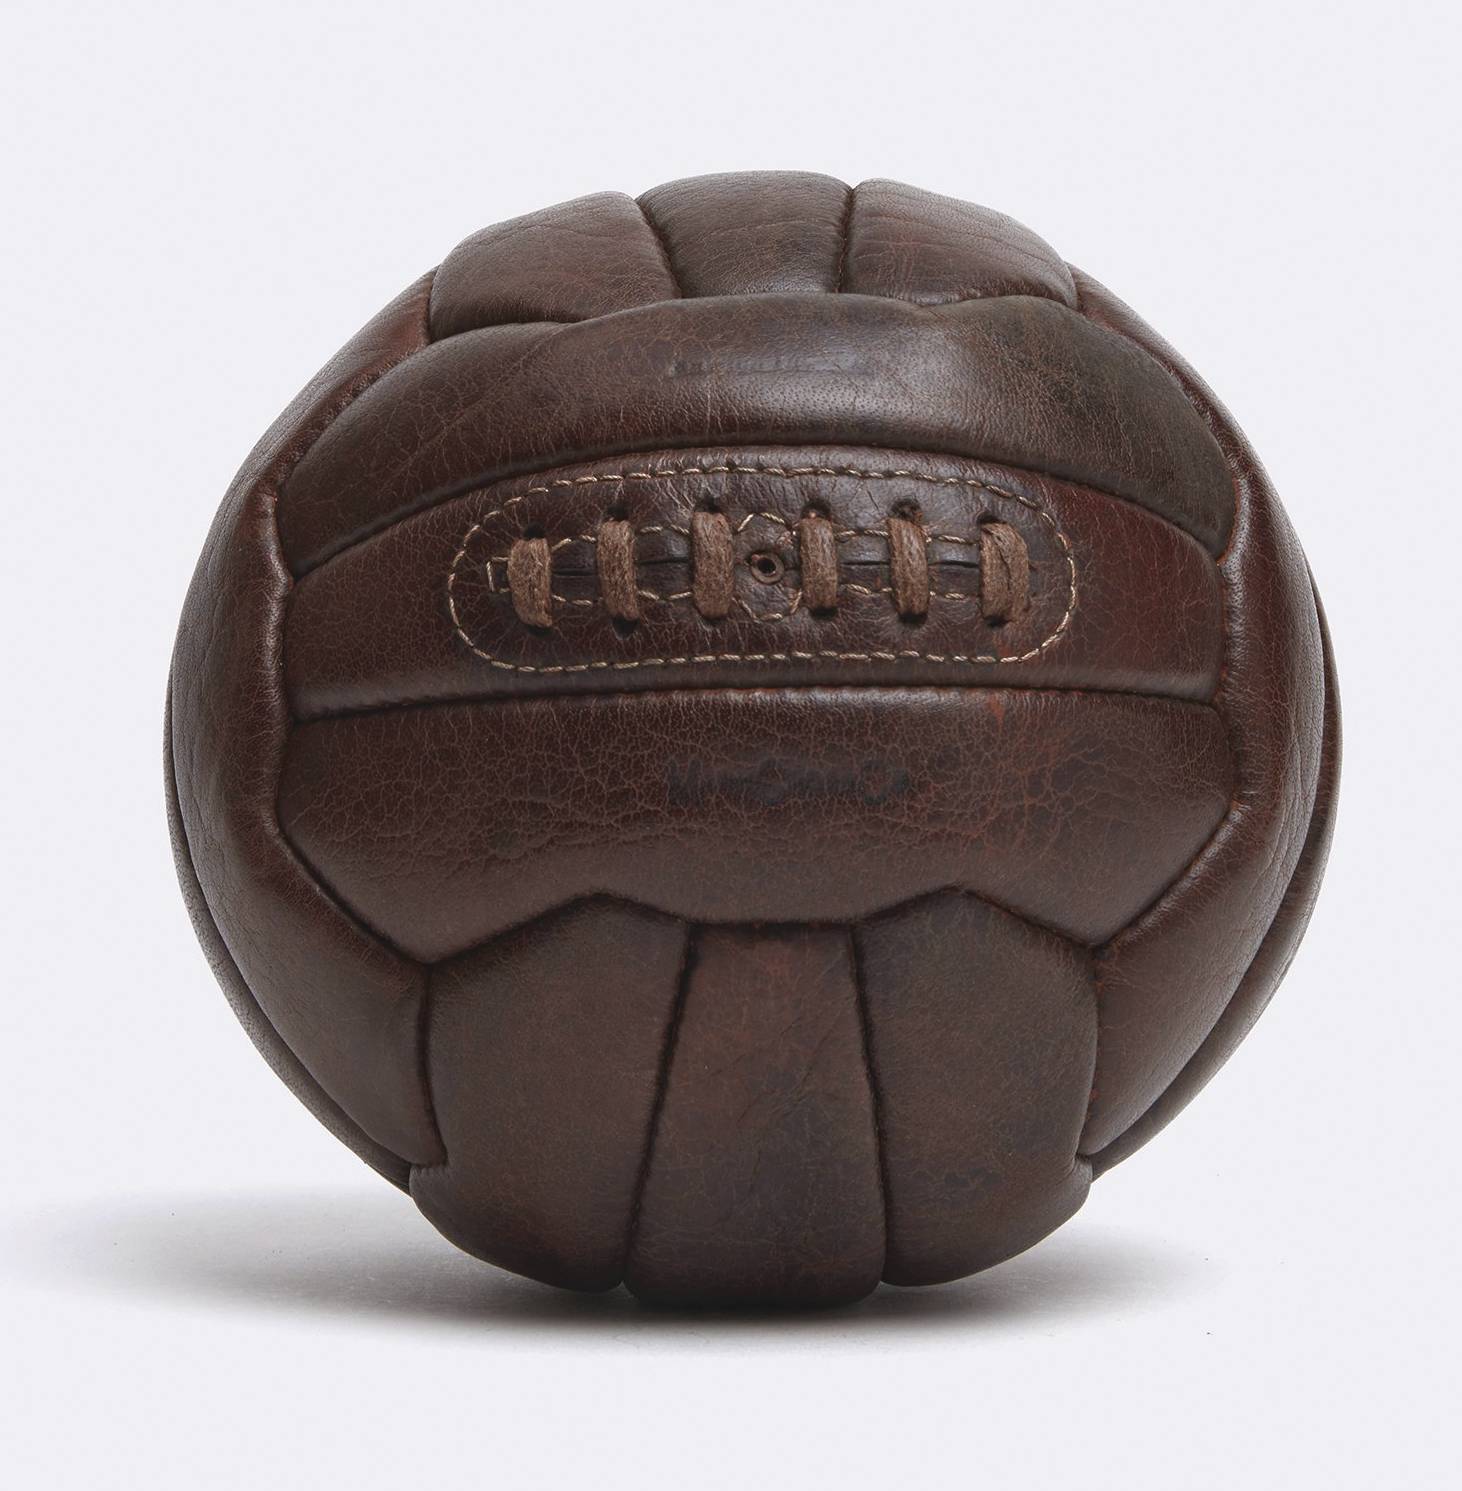 Mark Cross vintage soccer ball image